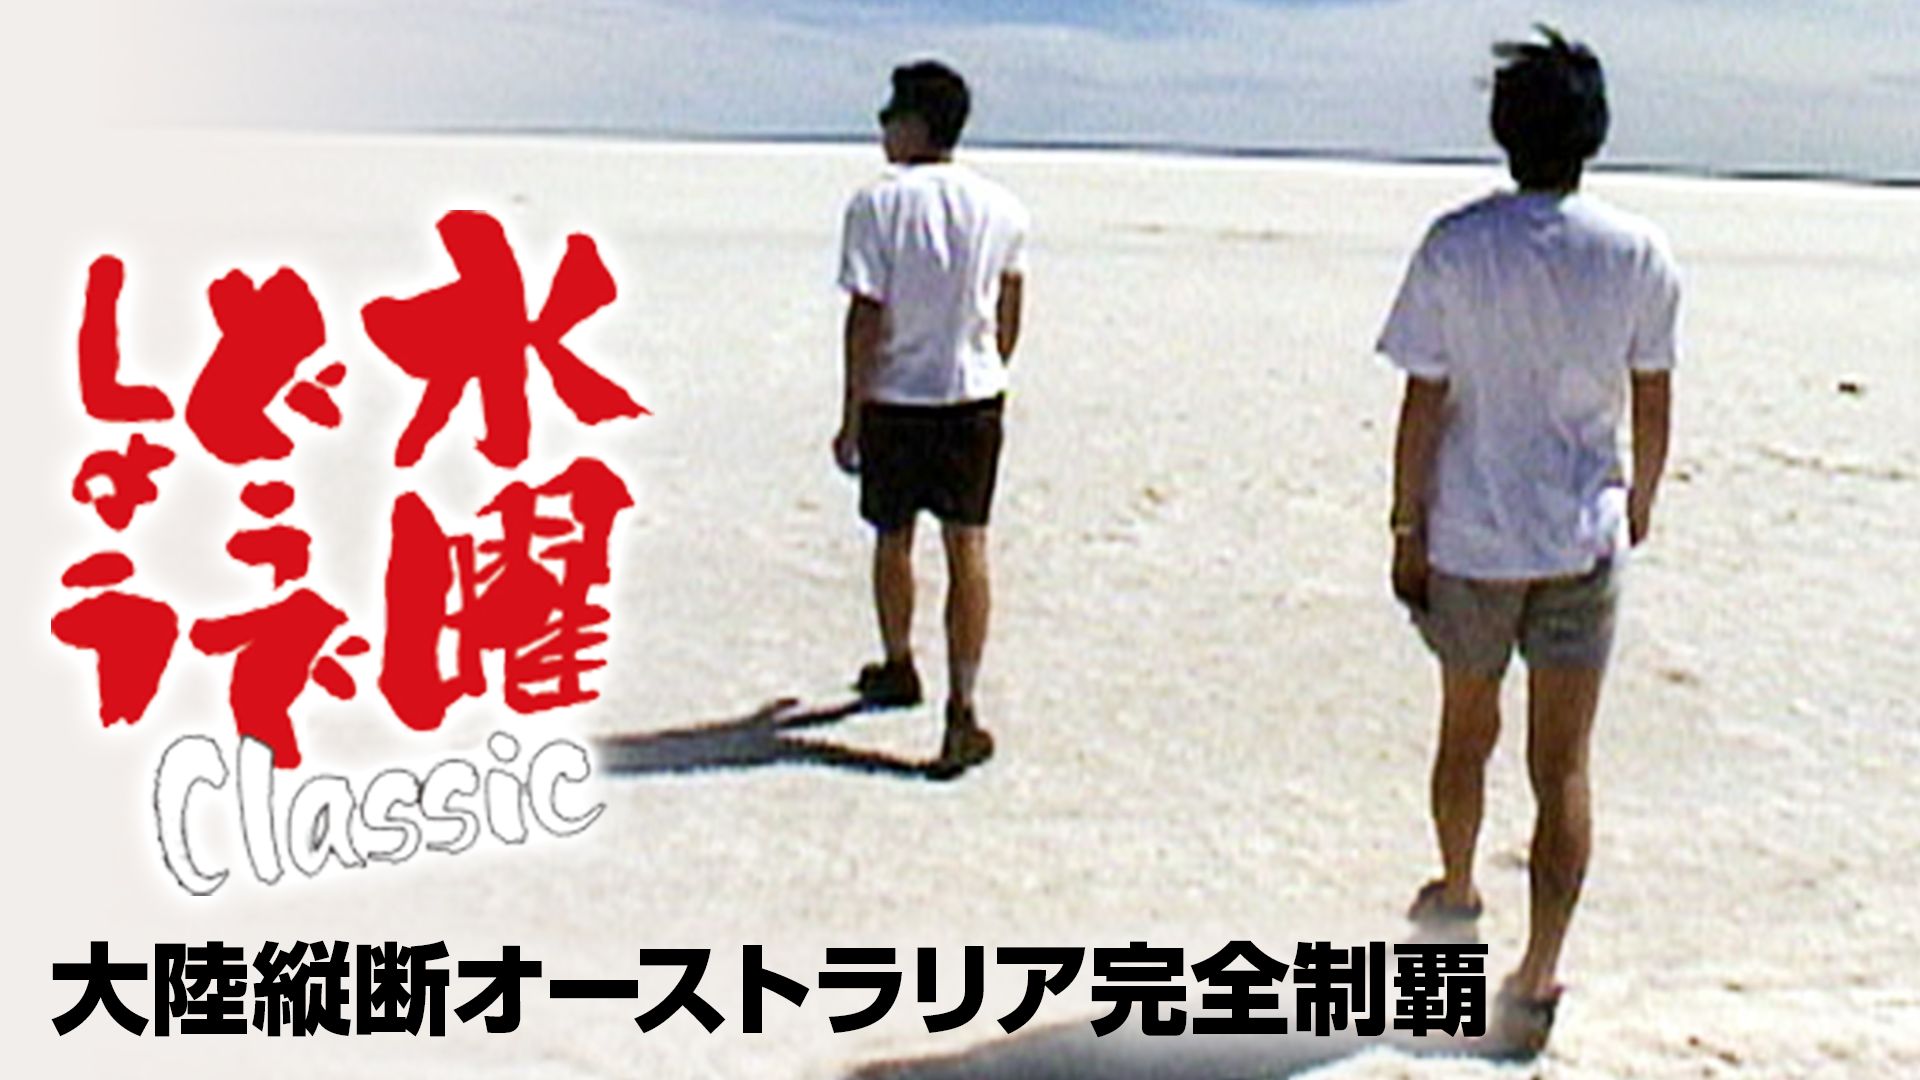 水曜どうでしょう 原付日本列島制覇の動画を配信しているサービス 動画作品を探すならaukana